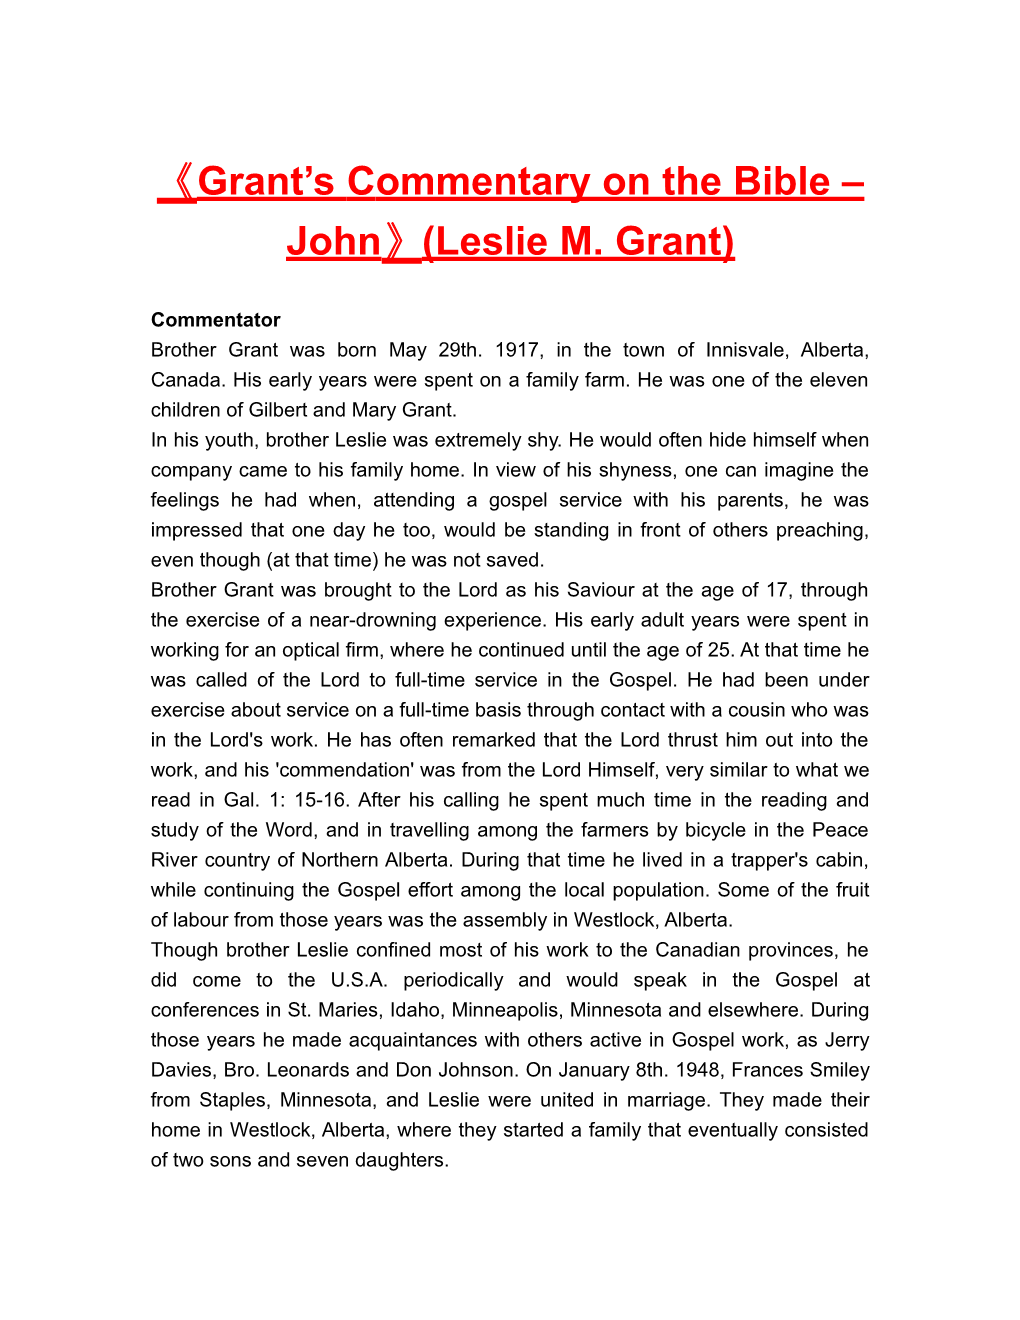 Grant Scommentaryon the Bible John (Leslie M. Grant)